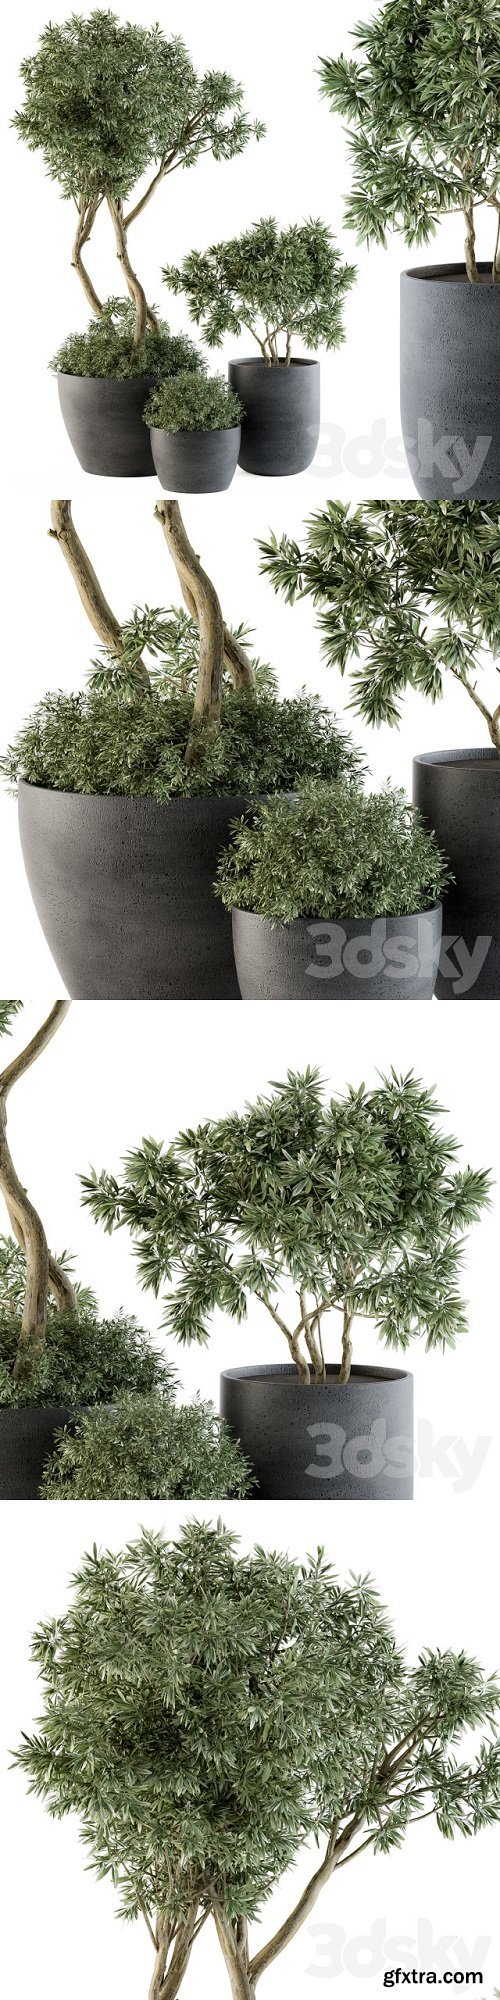 Outdoor Plants Tree in pot – Set 90